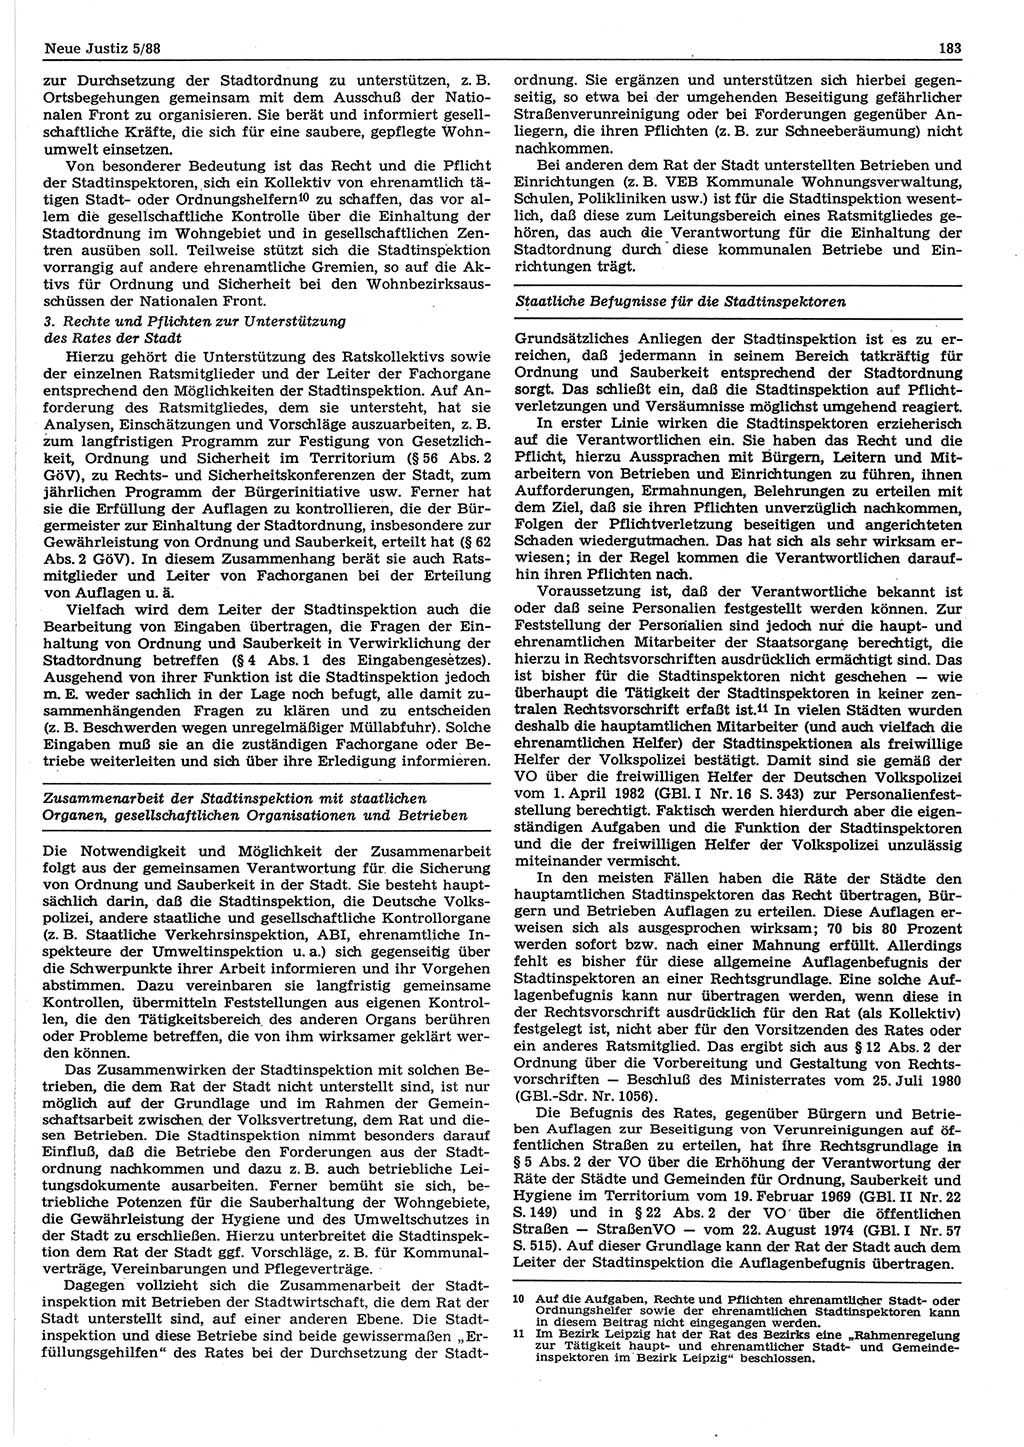 Neue Justiz (NJ), Zeitschrift für sozialistisches Recht und Gesetzlichkeit [Deutsche Demokratische Republik (DDR)], 42. Jahrgang 1988, Seite 183 (NJ DDR 1988, S. 183)